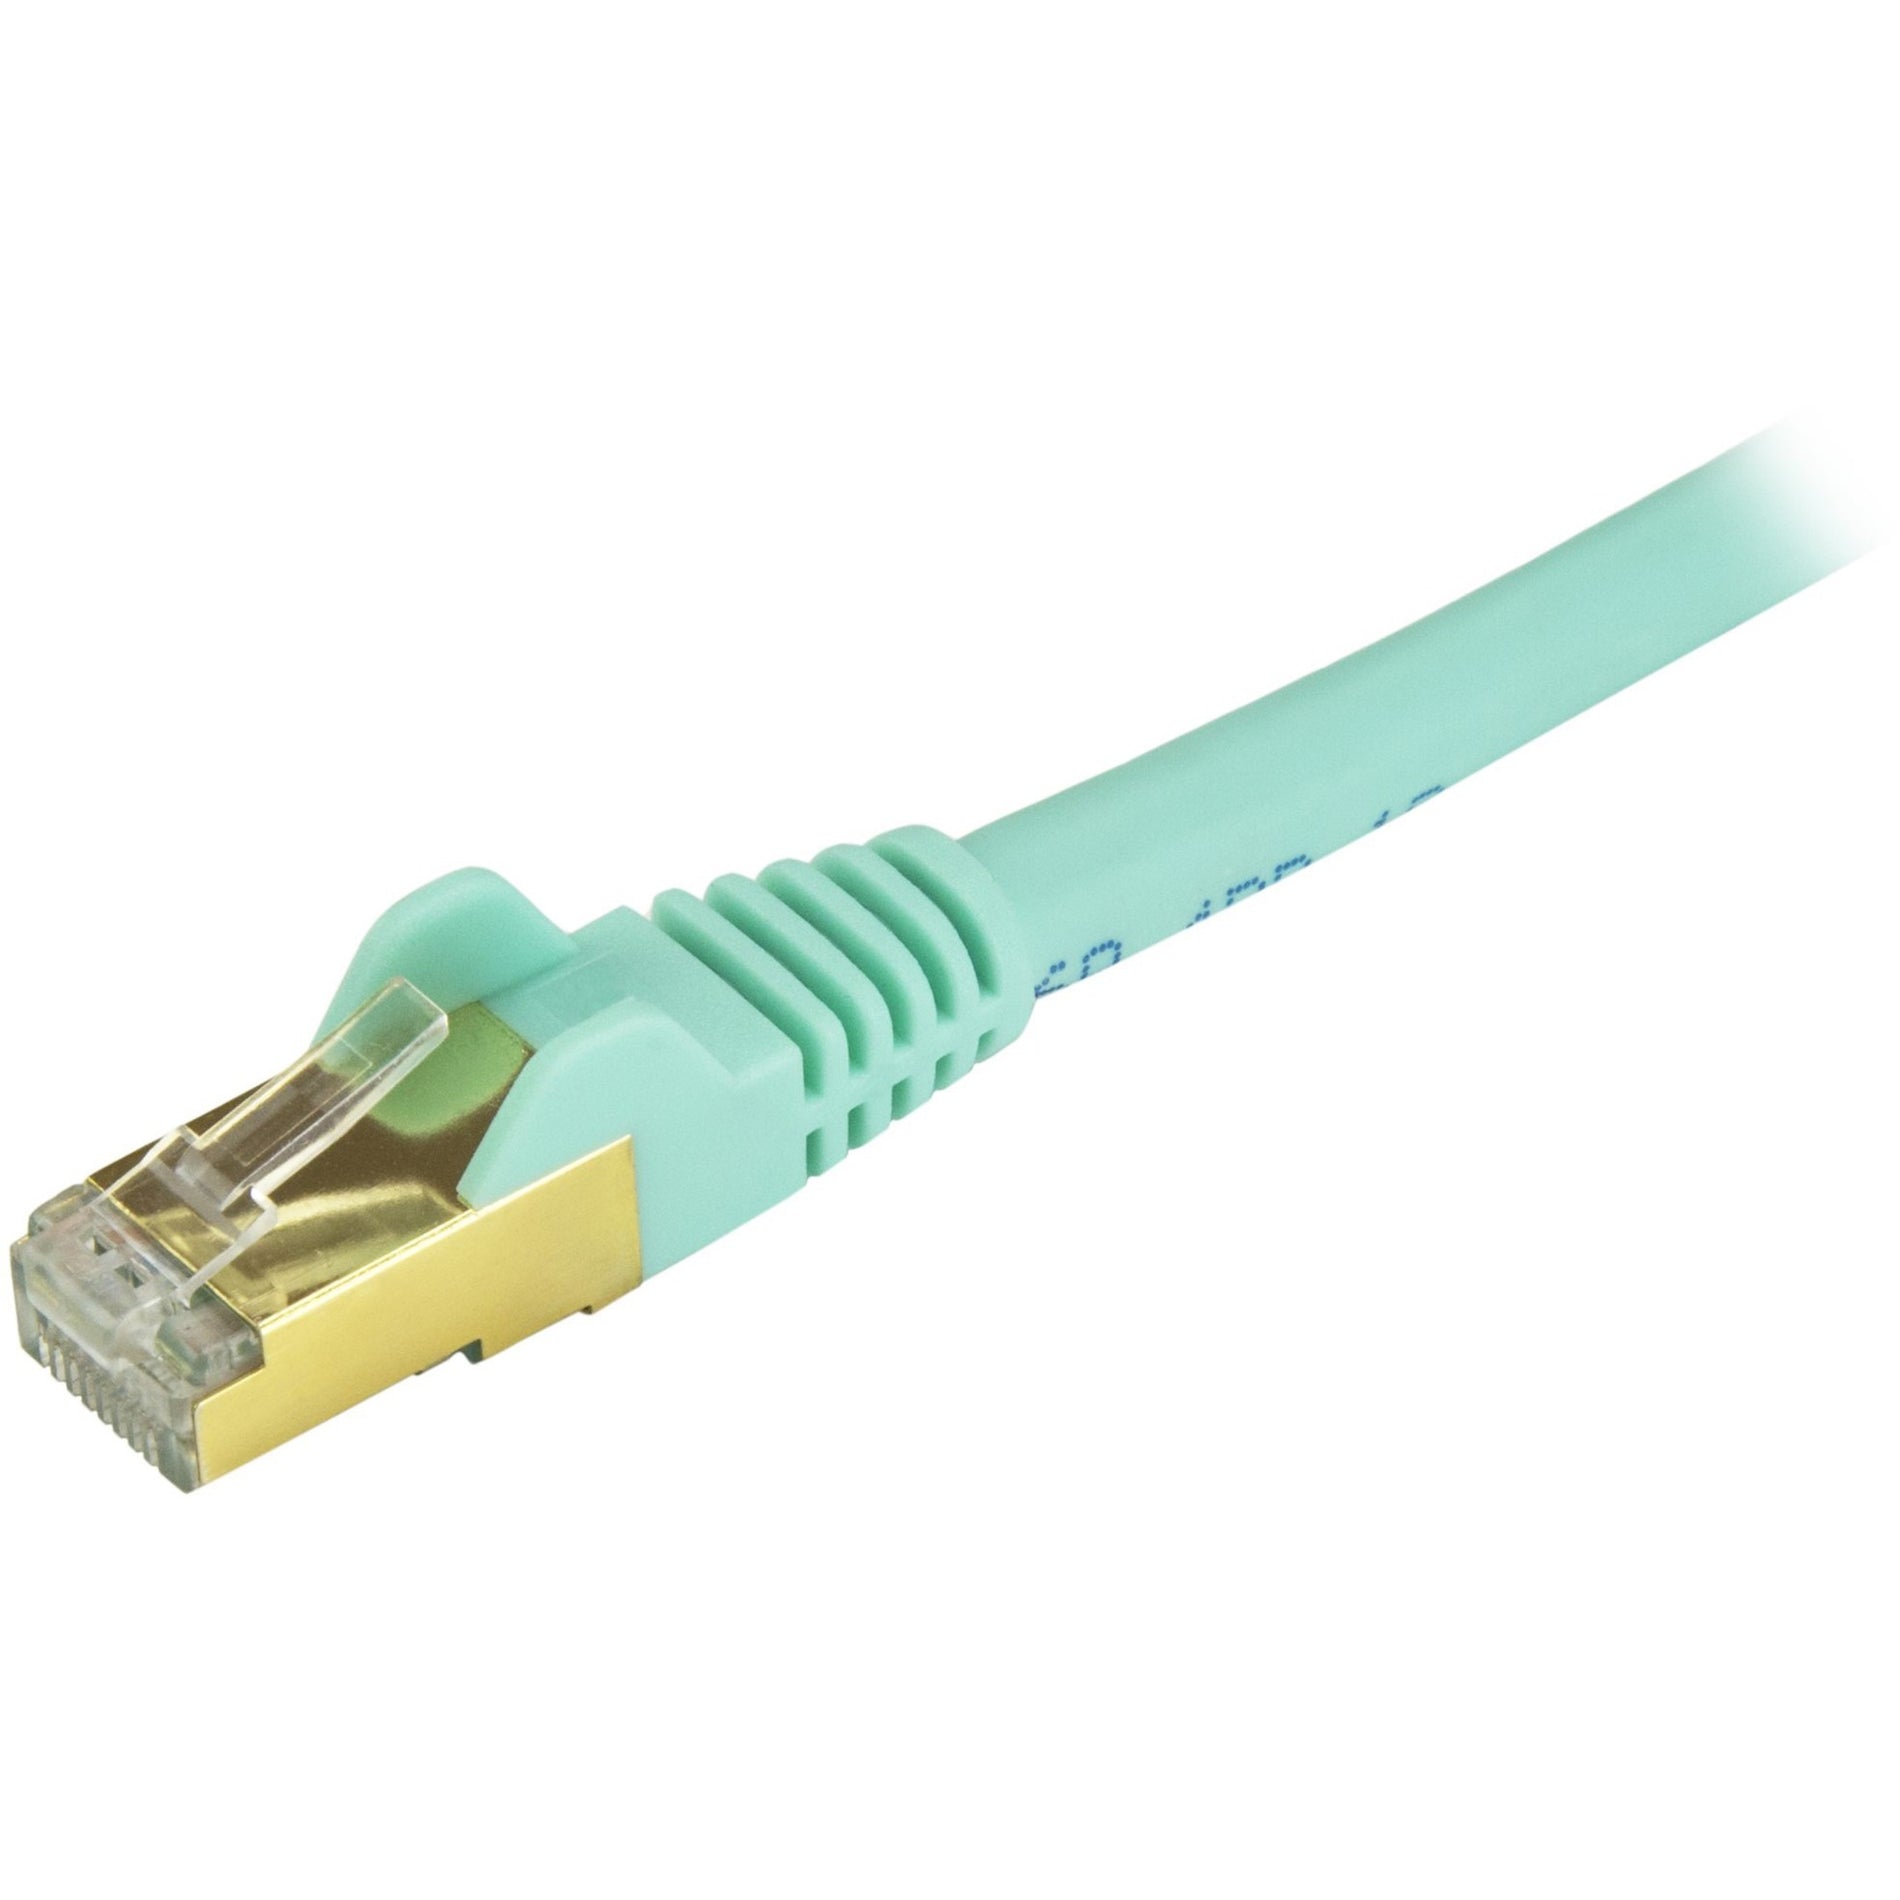 StarTech.com C6ASPAT10AQ Cable de parche Ethernet Cat6a - Blindado (STP) - 10 ft. Aqua Cordón Ethernet RJ45 sin enganches